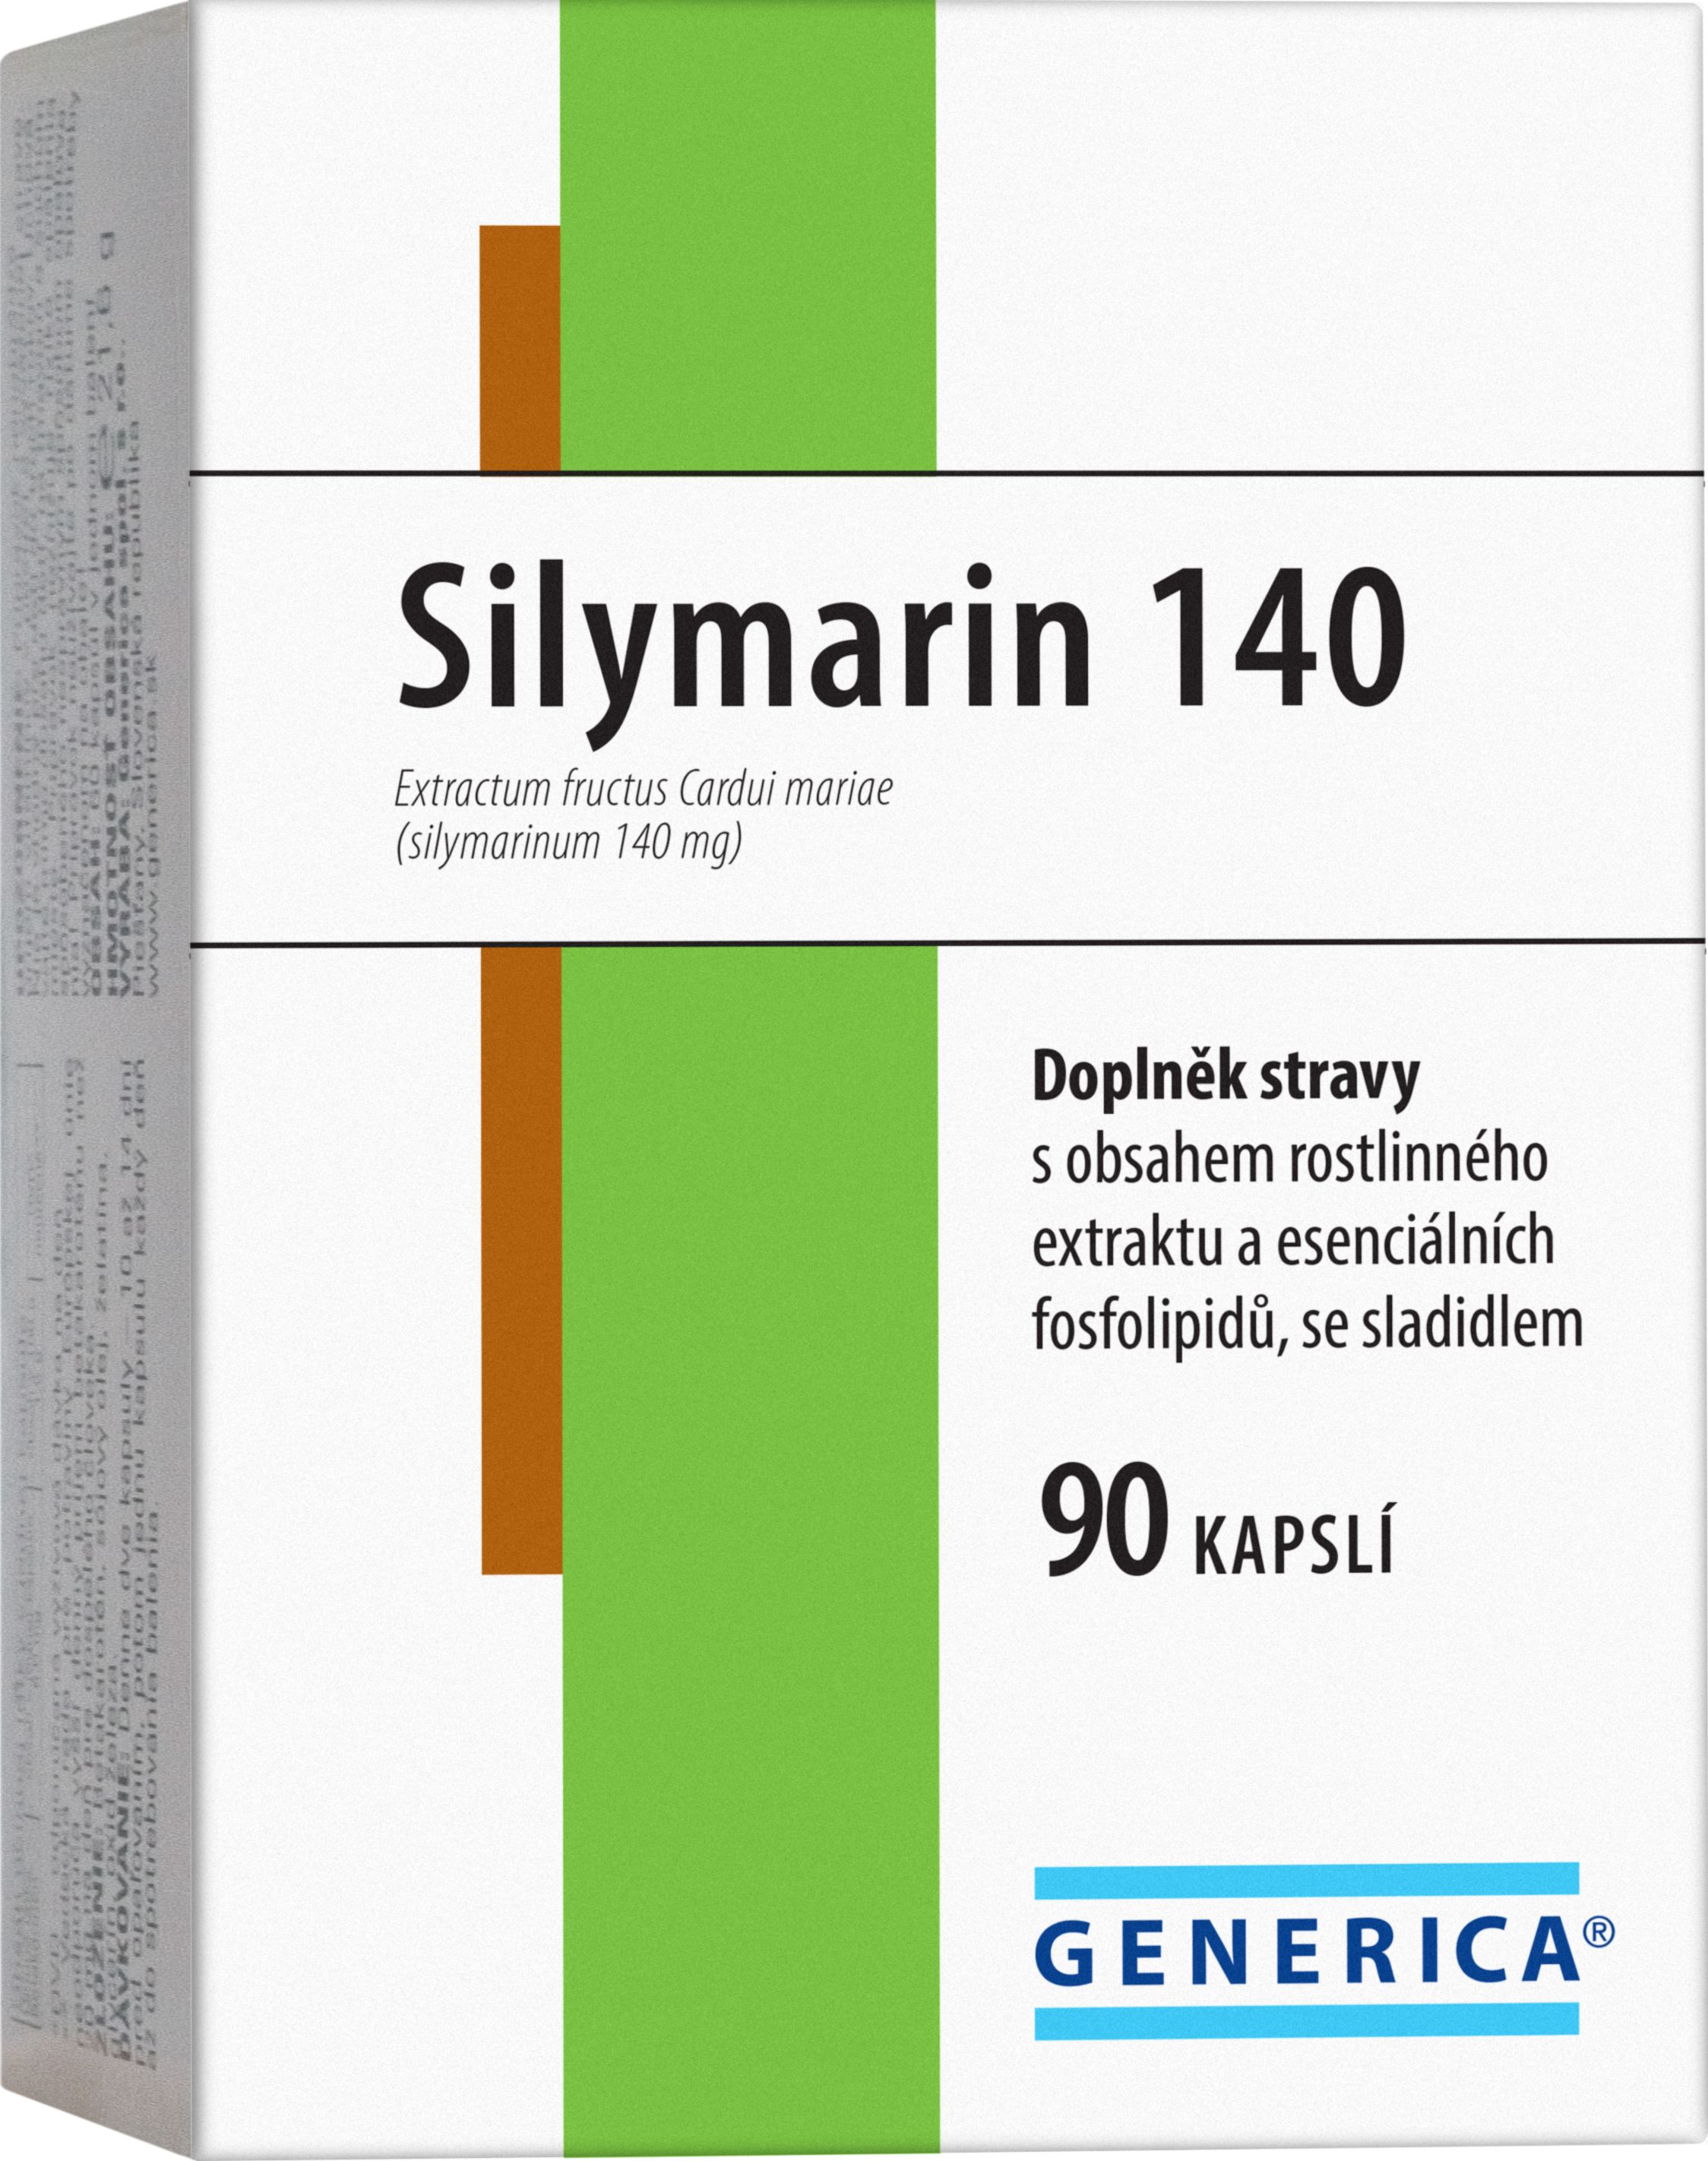 Generica Silymarin 140 90 kapslí Generica